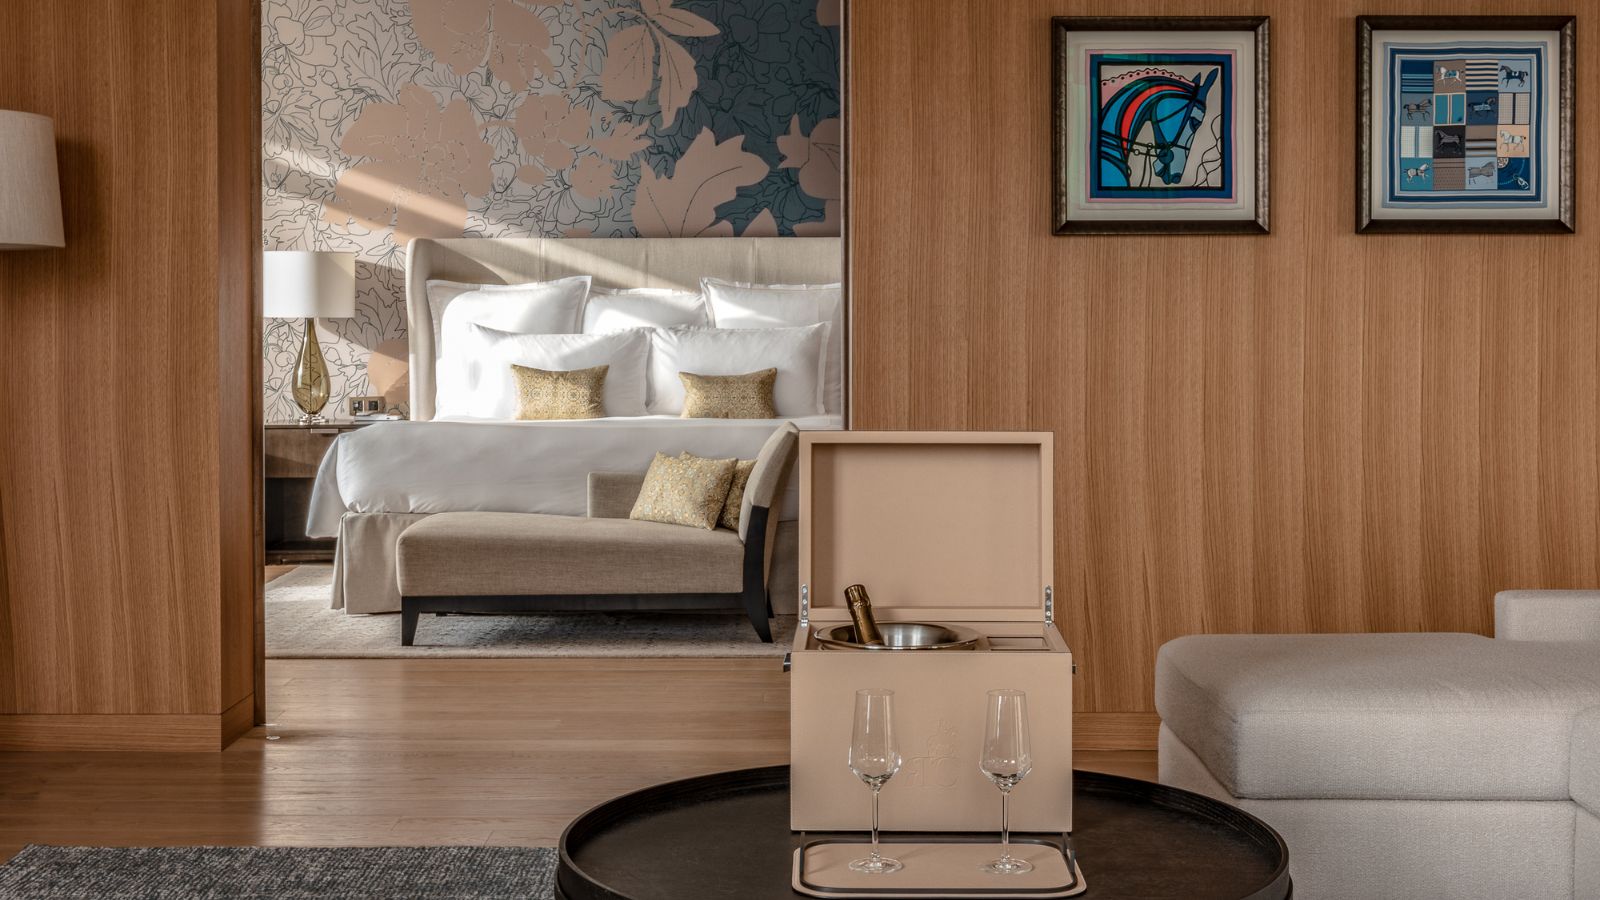 Suite Josephine, alojamiento estrella del hotel Royal Champagne, con una preciosa marquetería, arte contemporáneo en estilo sobrio y una paleta simple de colores.
 - imagen 2